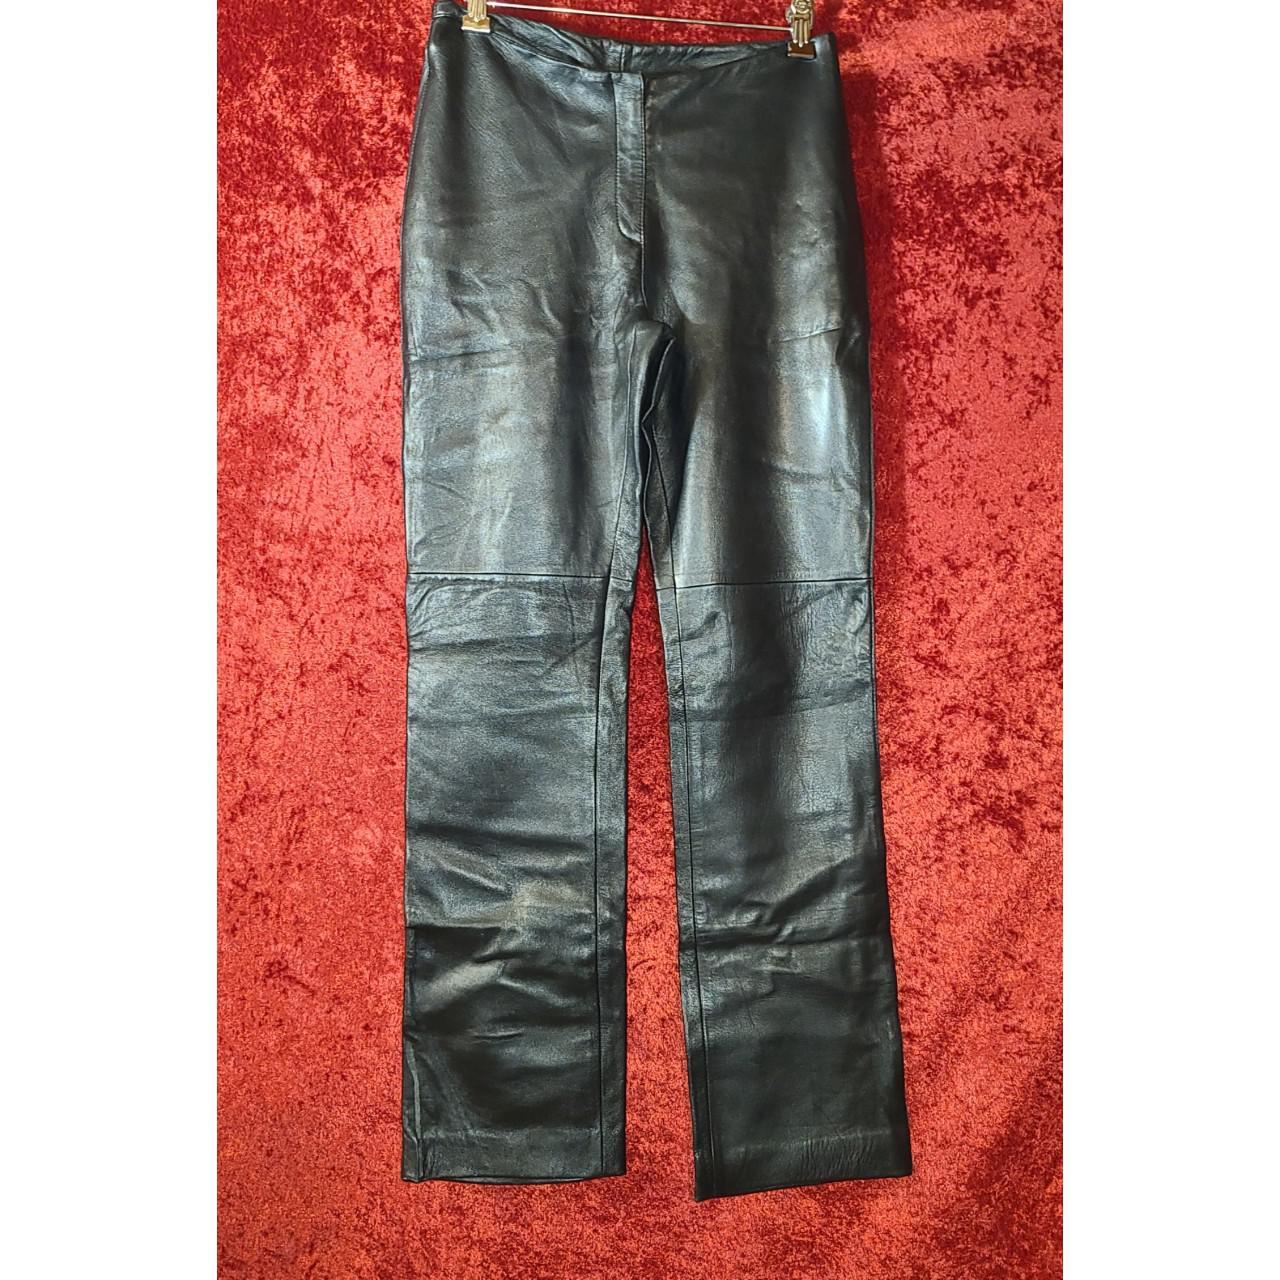 Vintage Bebe Leather Pants #bebe #leatherpants... - Depop